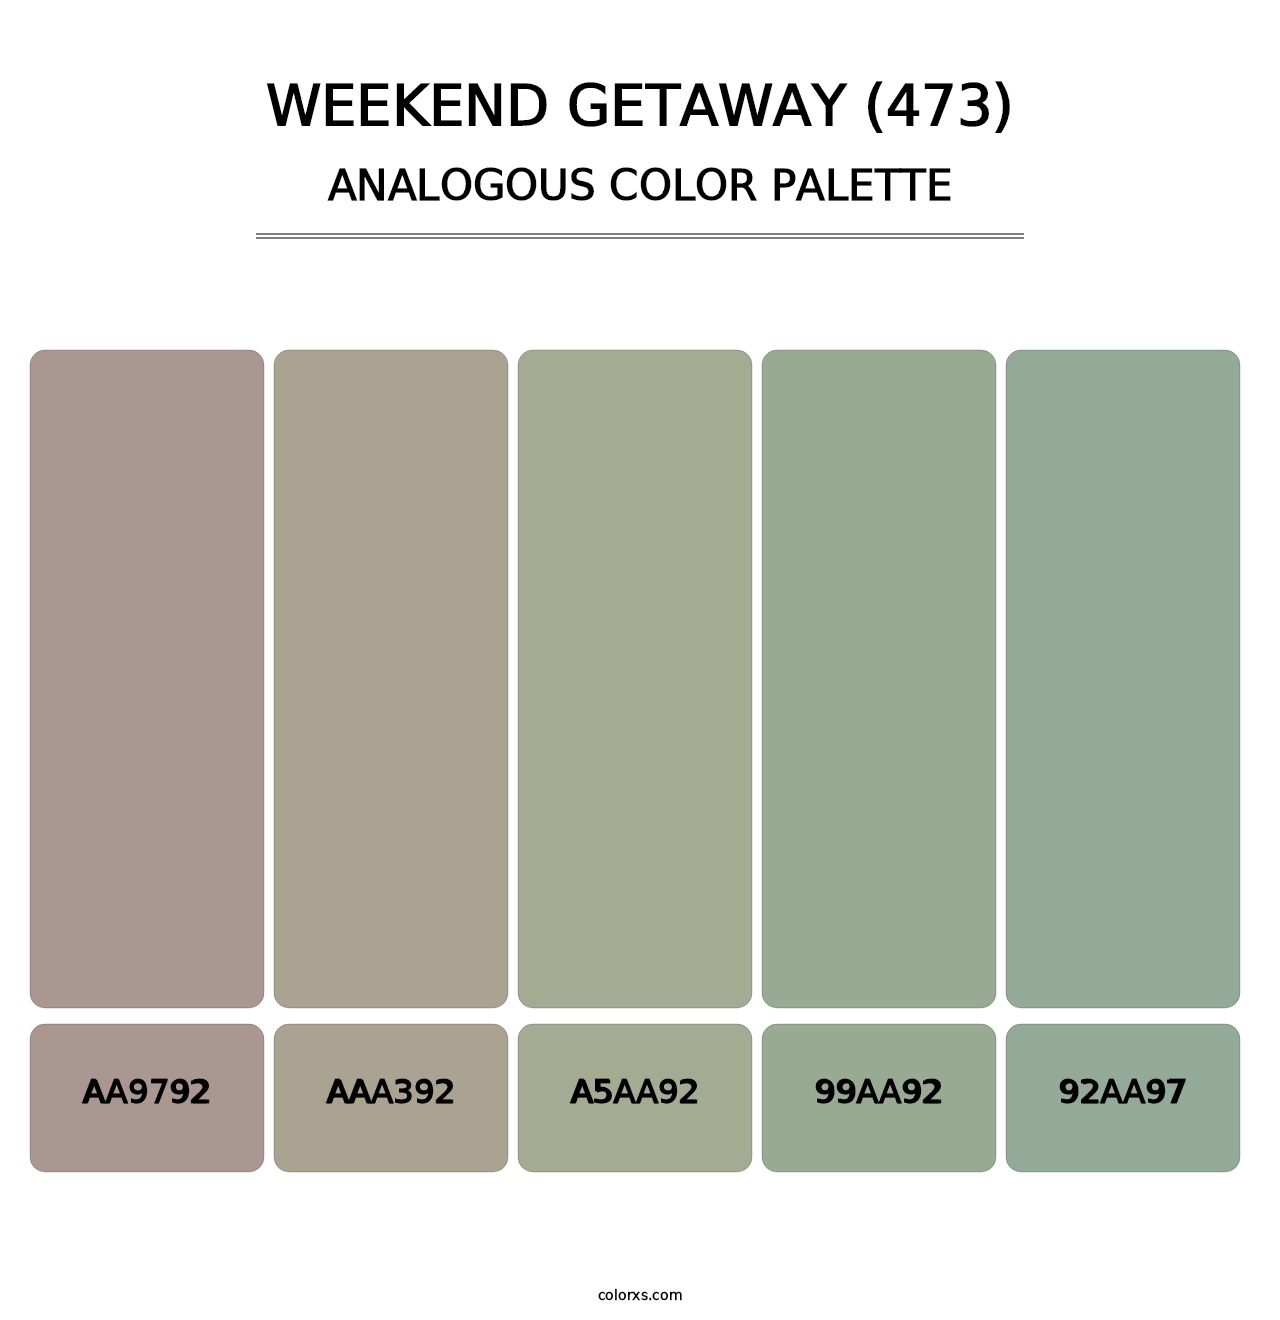 Weekend Getaway (473) - Analogous Color Palette